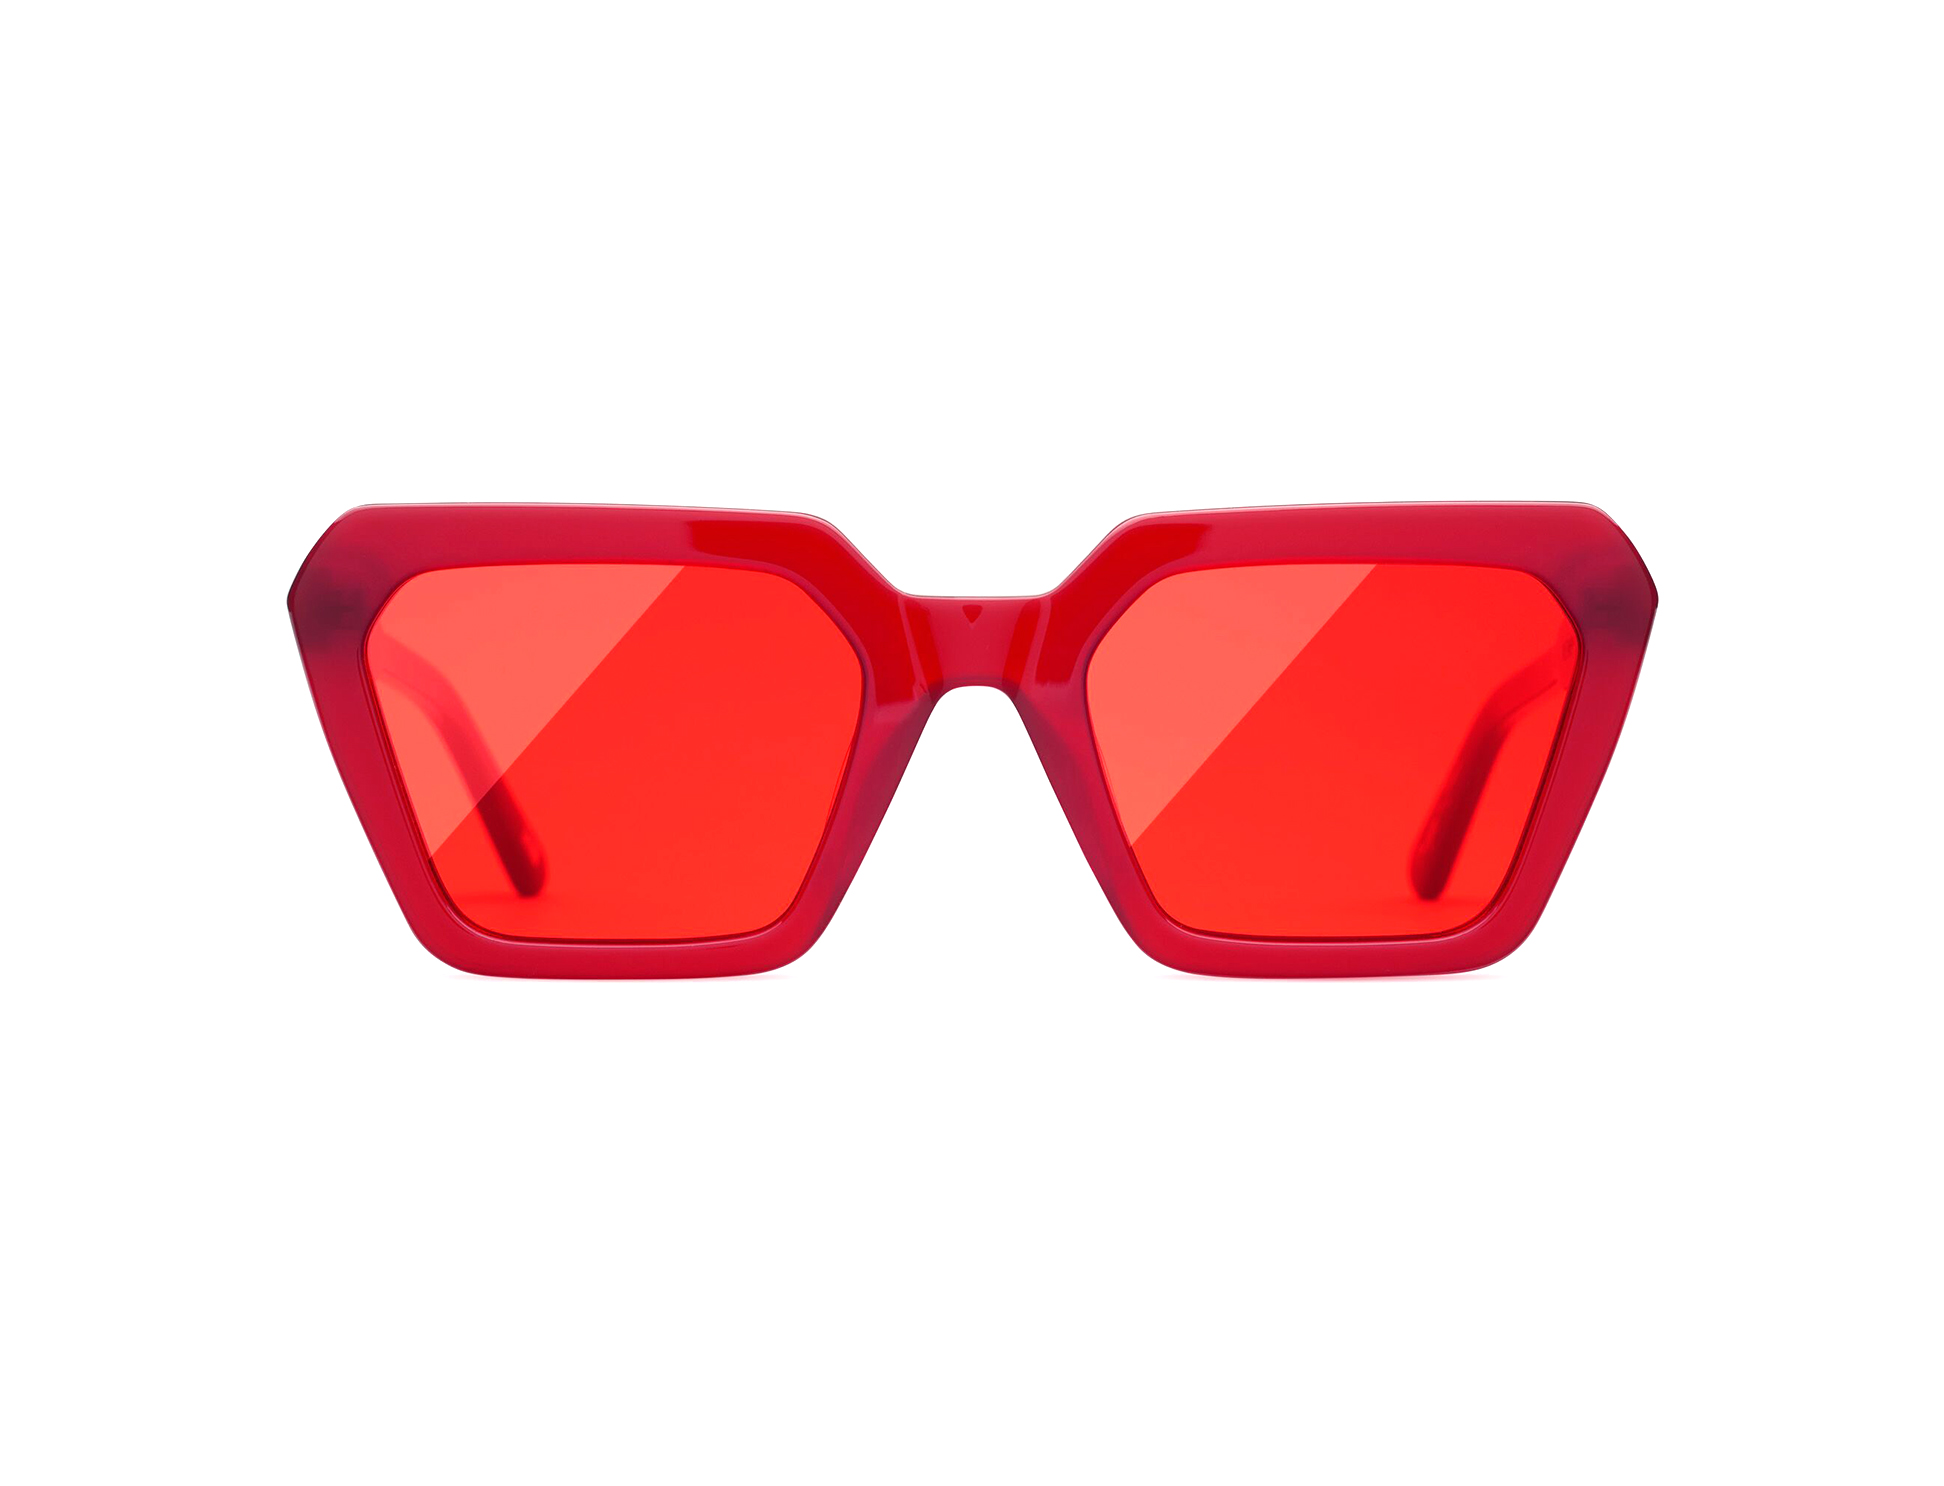 როგორი სათვალეები იქნება ტრენდული ზაფხულში? - მთავარი ტენდენციები Chimi Eyewear-სგან